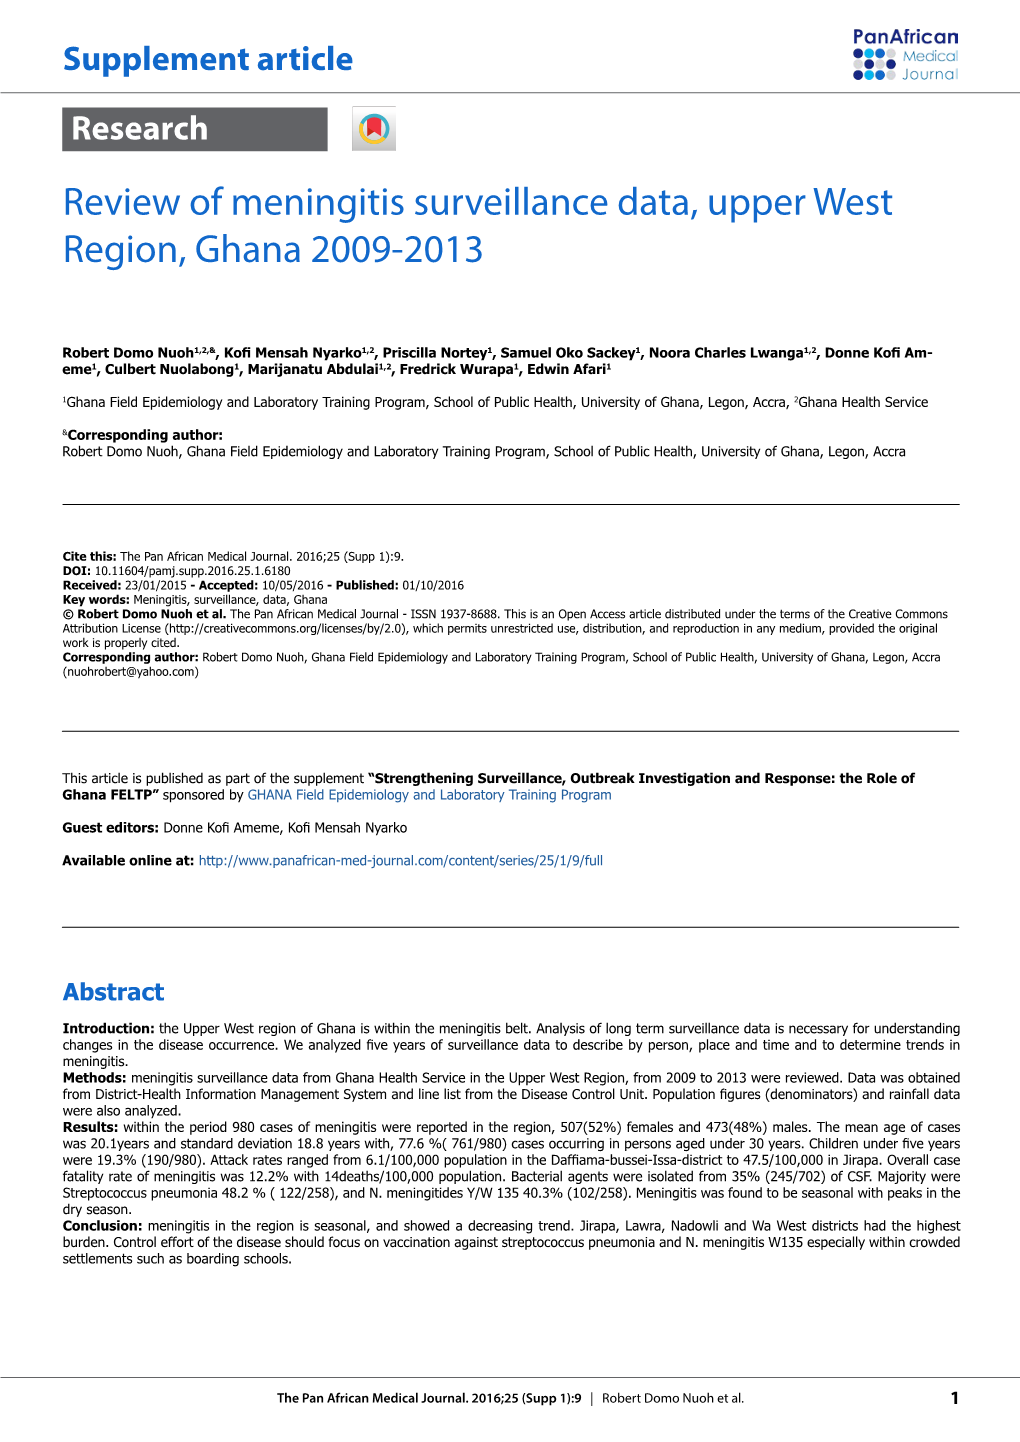 Review of Meningitis Surveillance Data, Upper West Region, Ghana 2009-2013